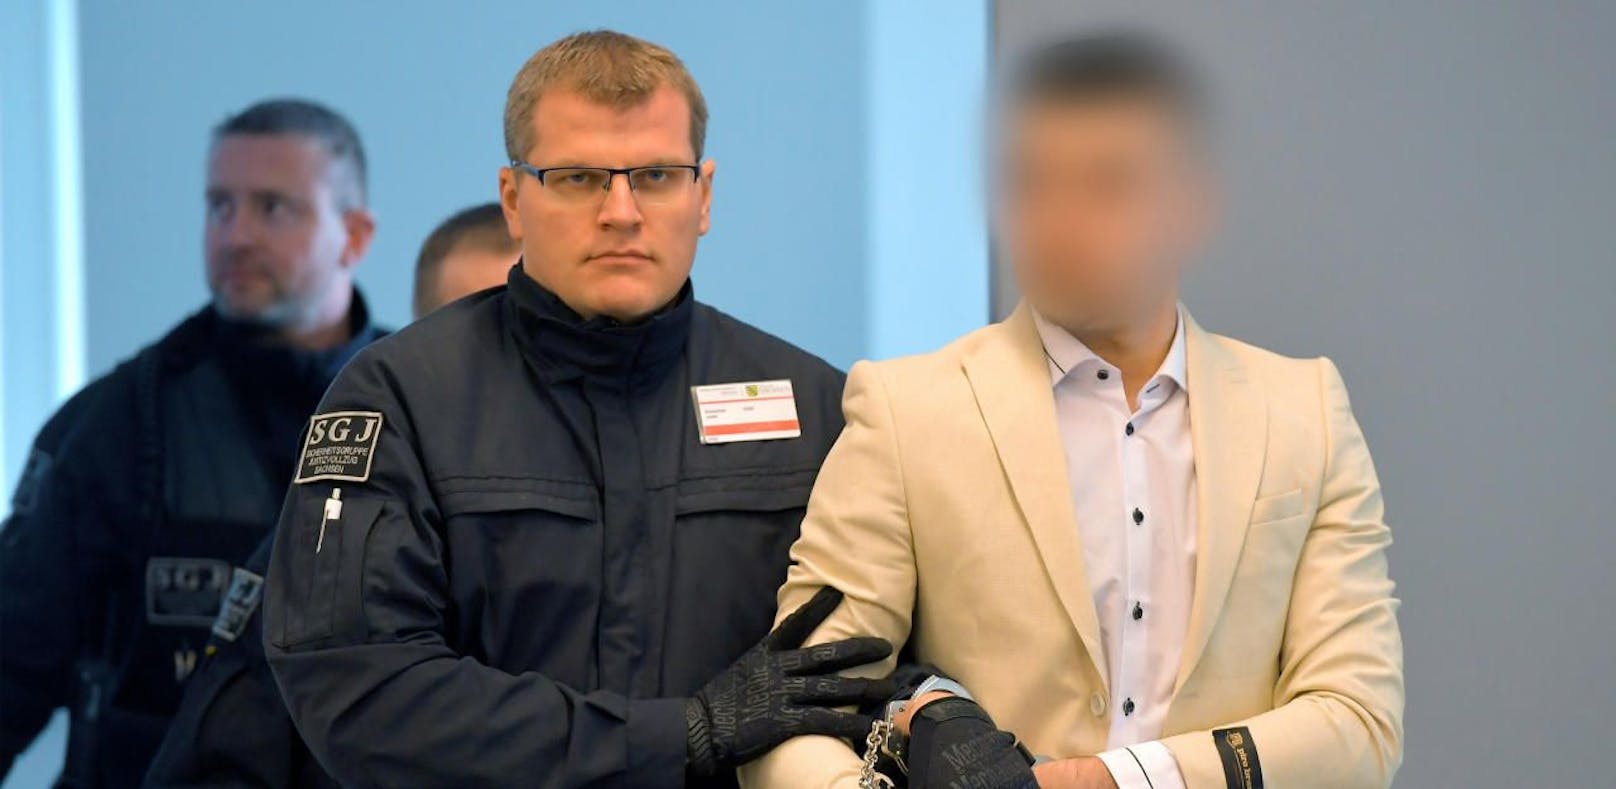 Neun Jahre Haft für Messermord von Chemnitz